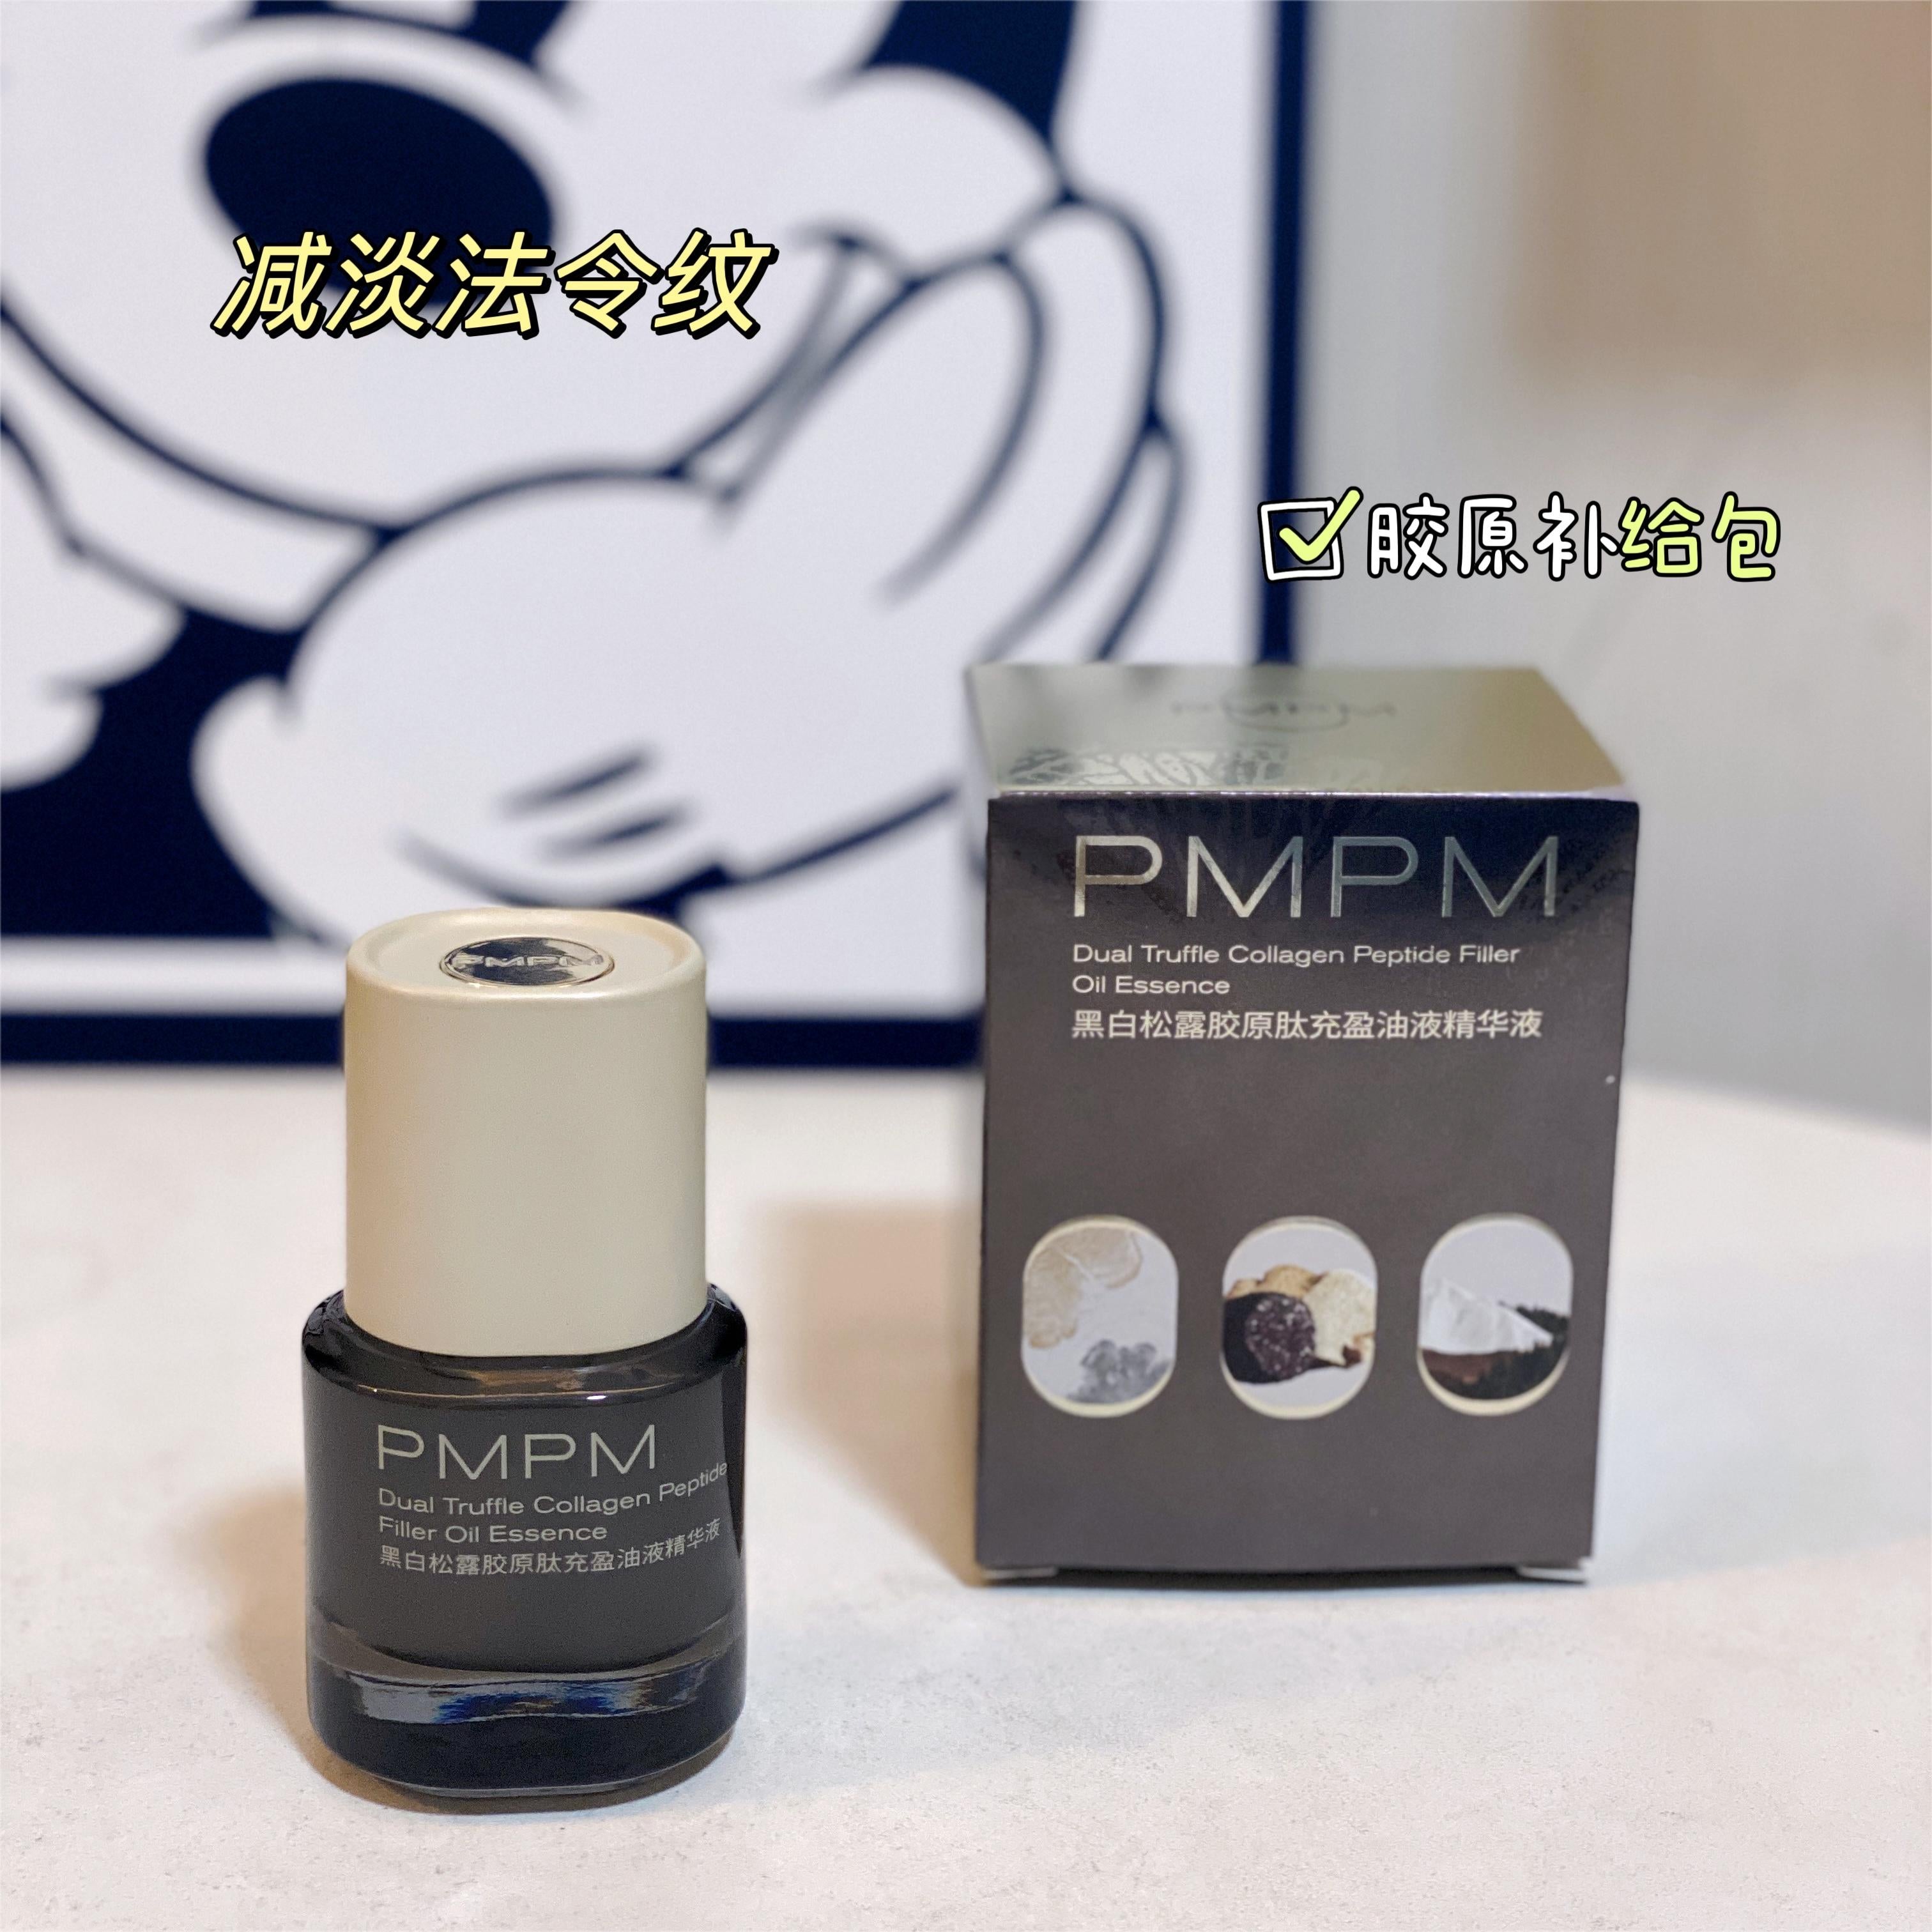 PMPM Dual Truffle Collagen Peptide Filler Oil Essence 3.0 30ml 偏偏黑白松露胶原肽充盈油液精华液3.0版